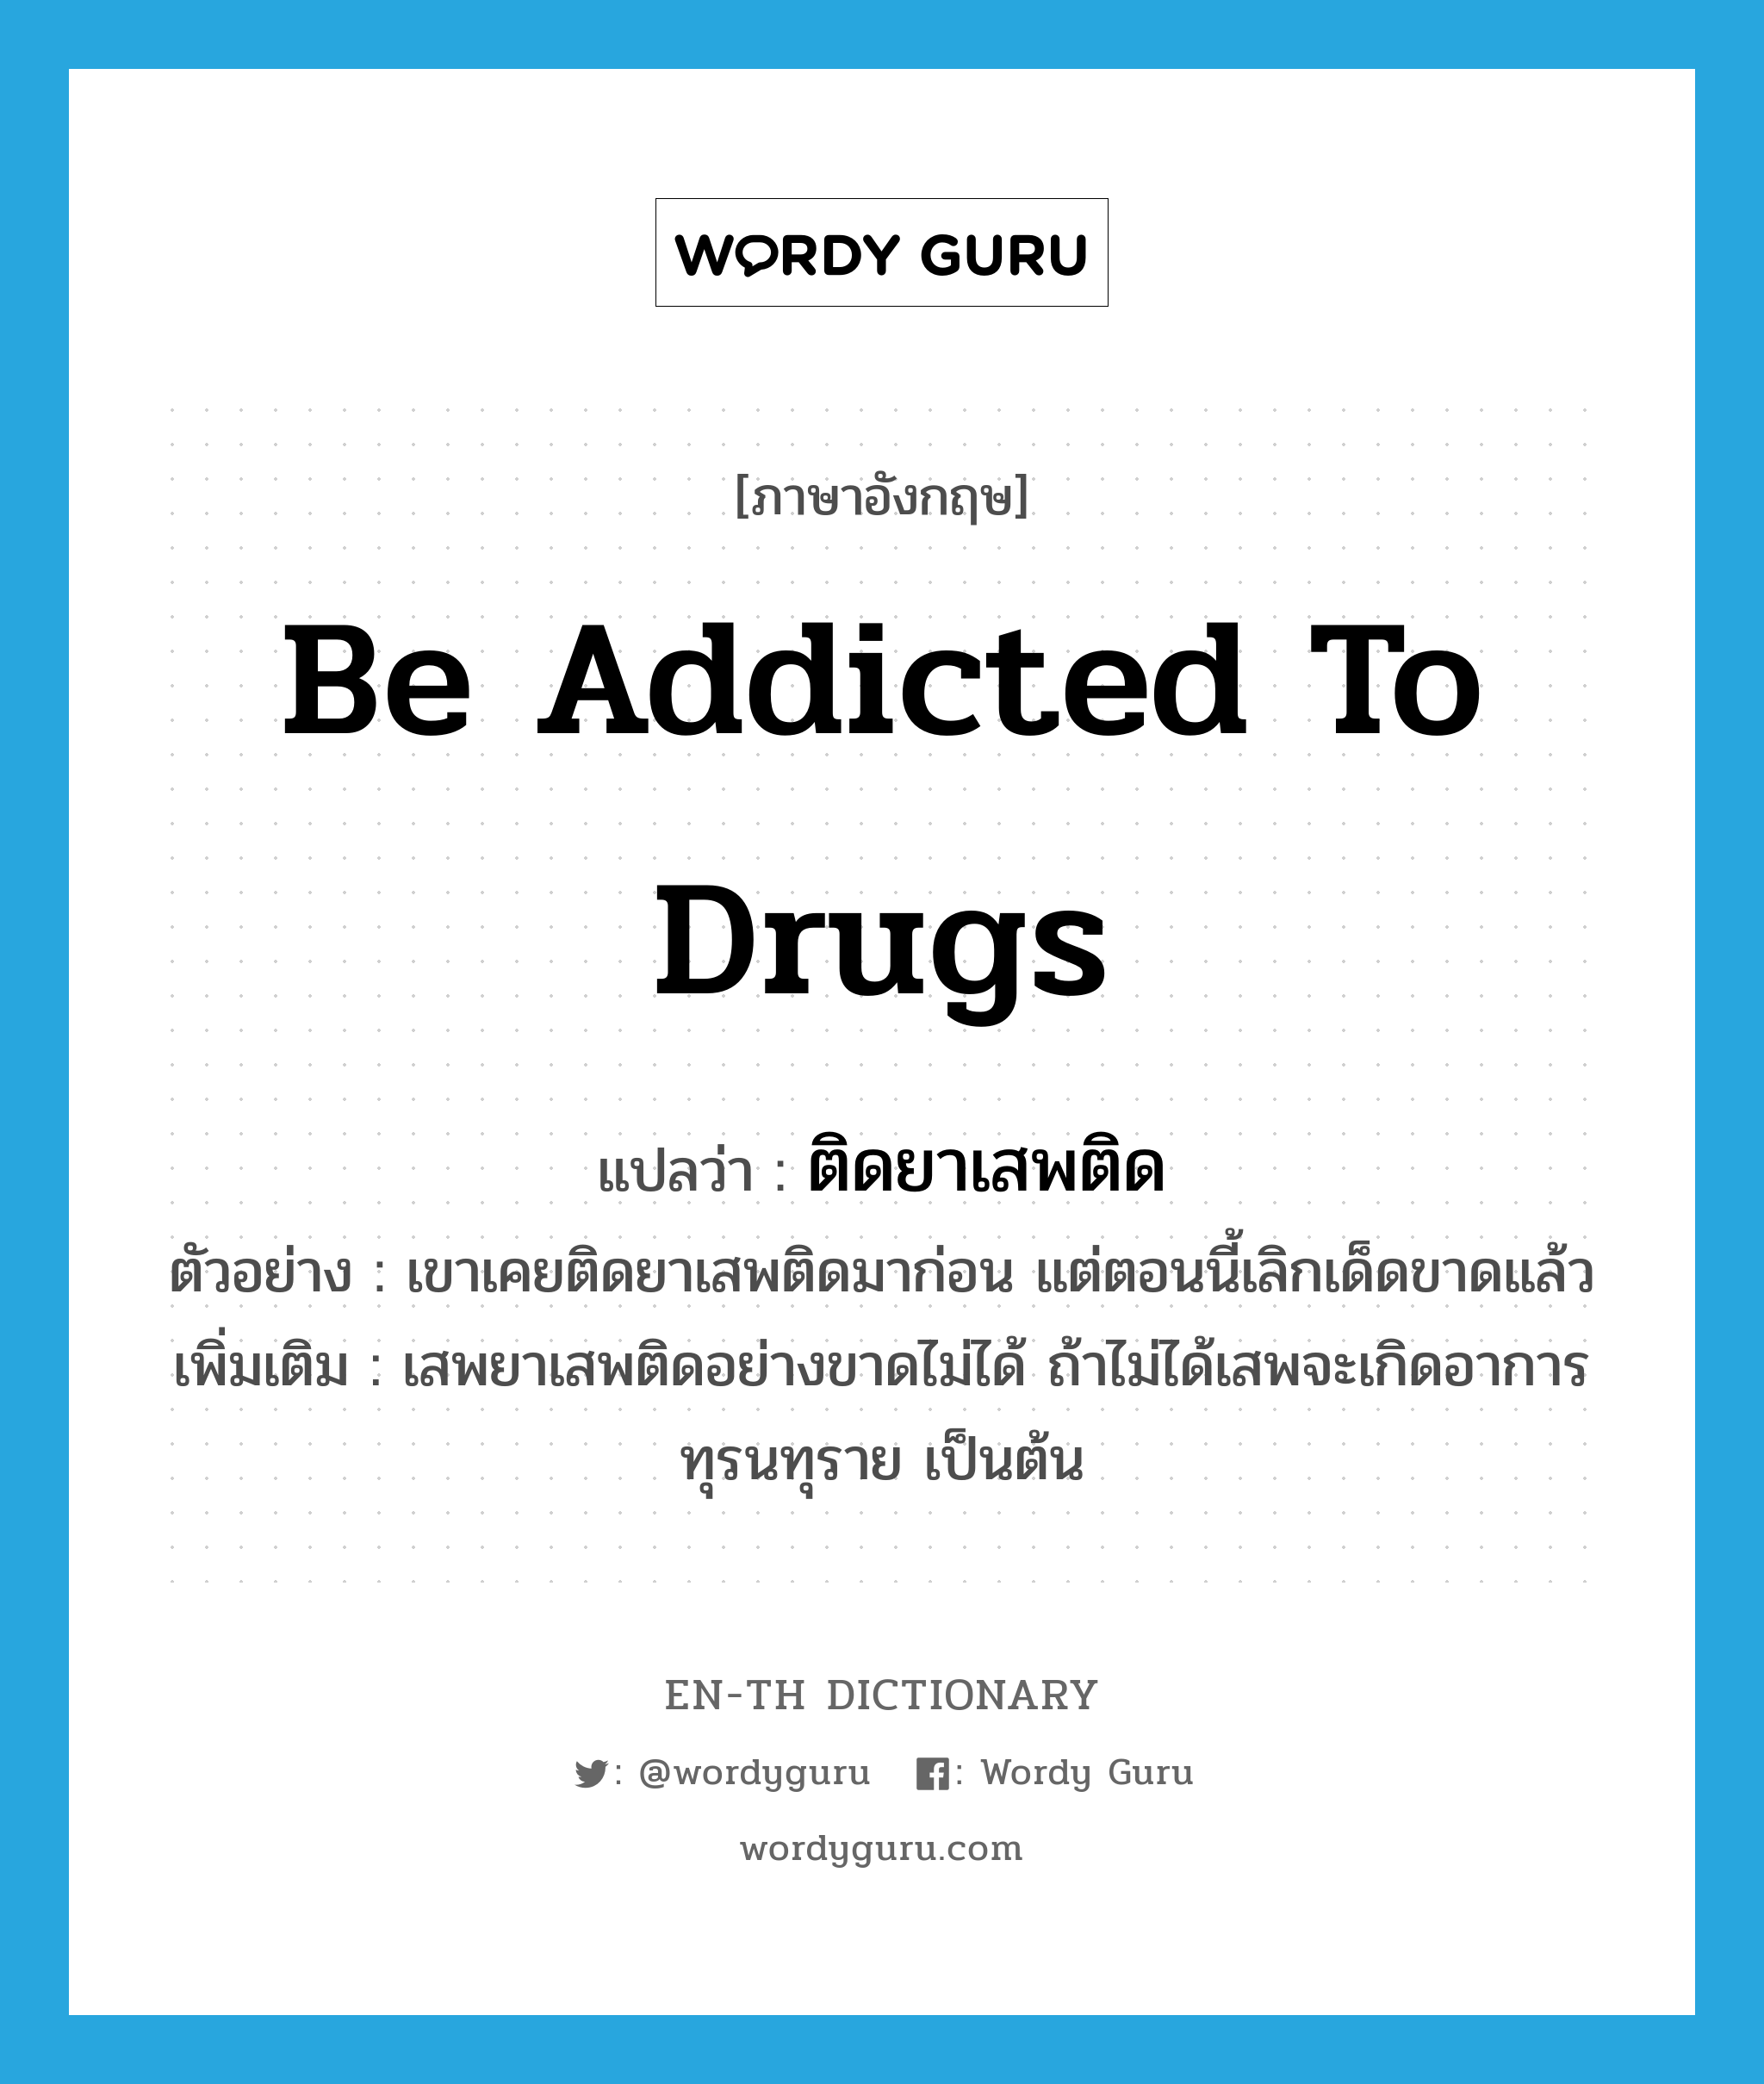 be addicted to drugs แปลว่า?, คำศัพท์ภาษาอังกฤษ be addicted to drugs แปลว่า ติดยาเสพติด ประเภท V ตัวอย่าง เขาเคยติดยาเสพติดมาก่อน แต่ตอนนี้เลิกเด็ดขาดแล้ว เพิ่มเติม เสพยาเสพติดอย่างขาดไม่ได้ ถ้าไม่ได้เสพจะเกิดอาการทุรนทุราย เป็นต้น หมวด V